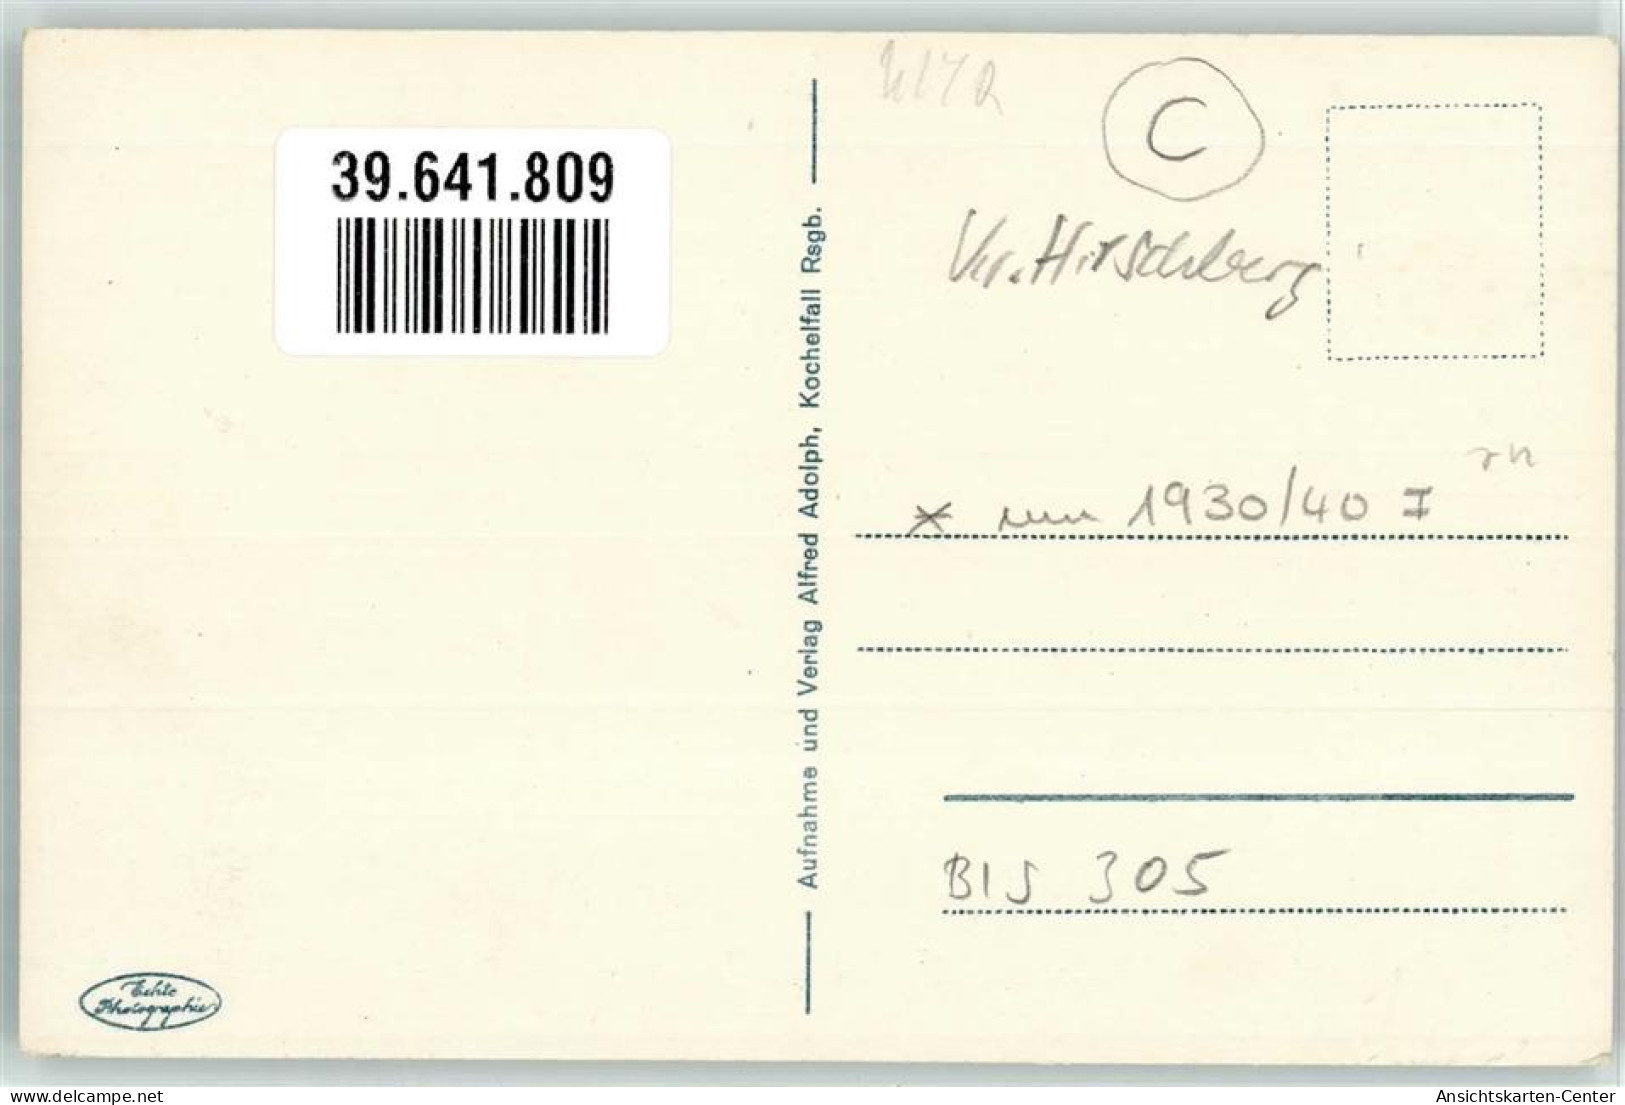 39641809 - Schreiberhau Szklarska Poreba - Polen